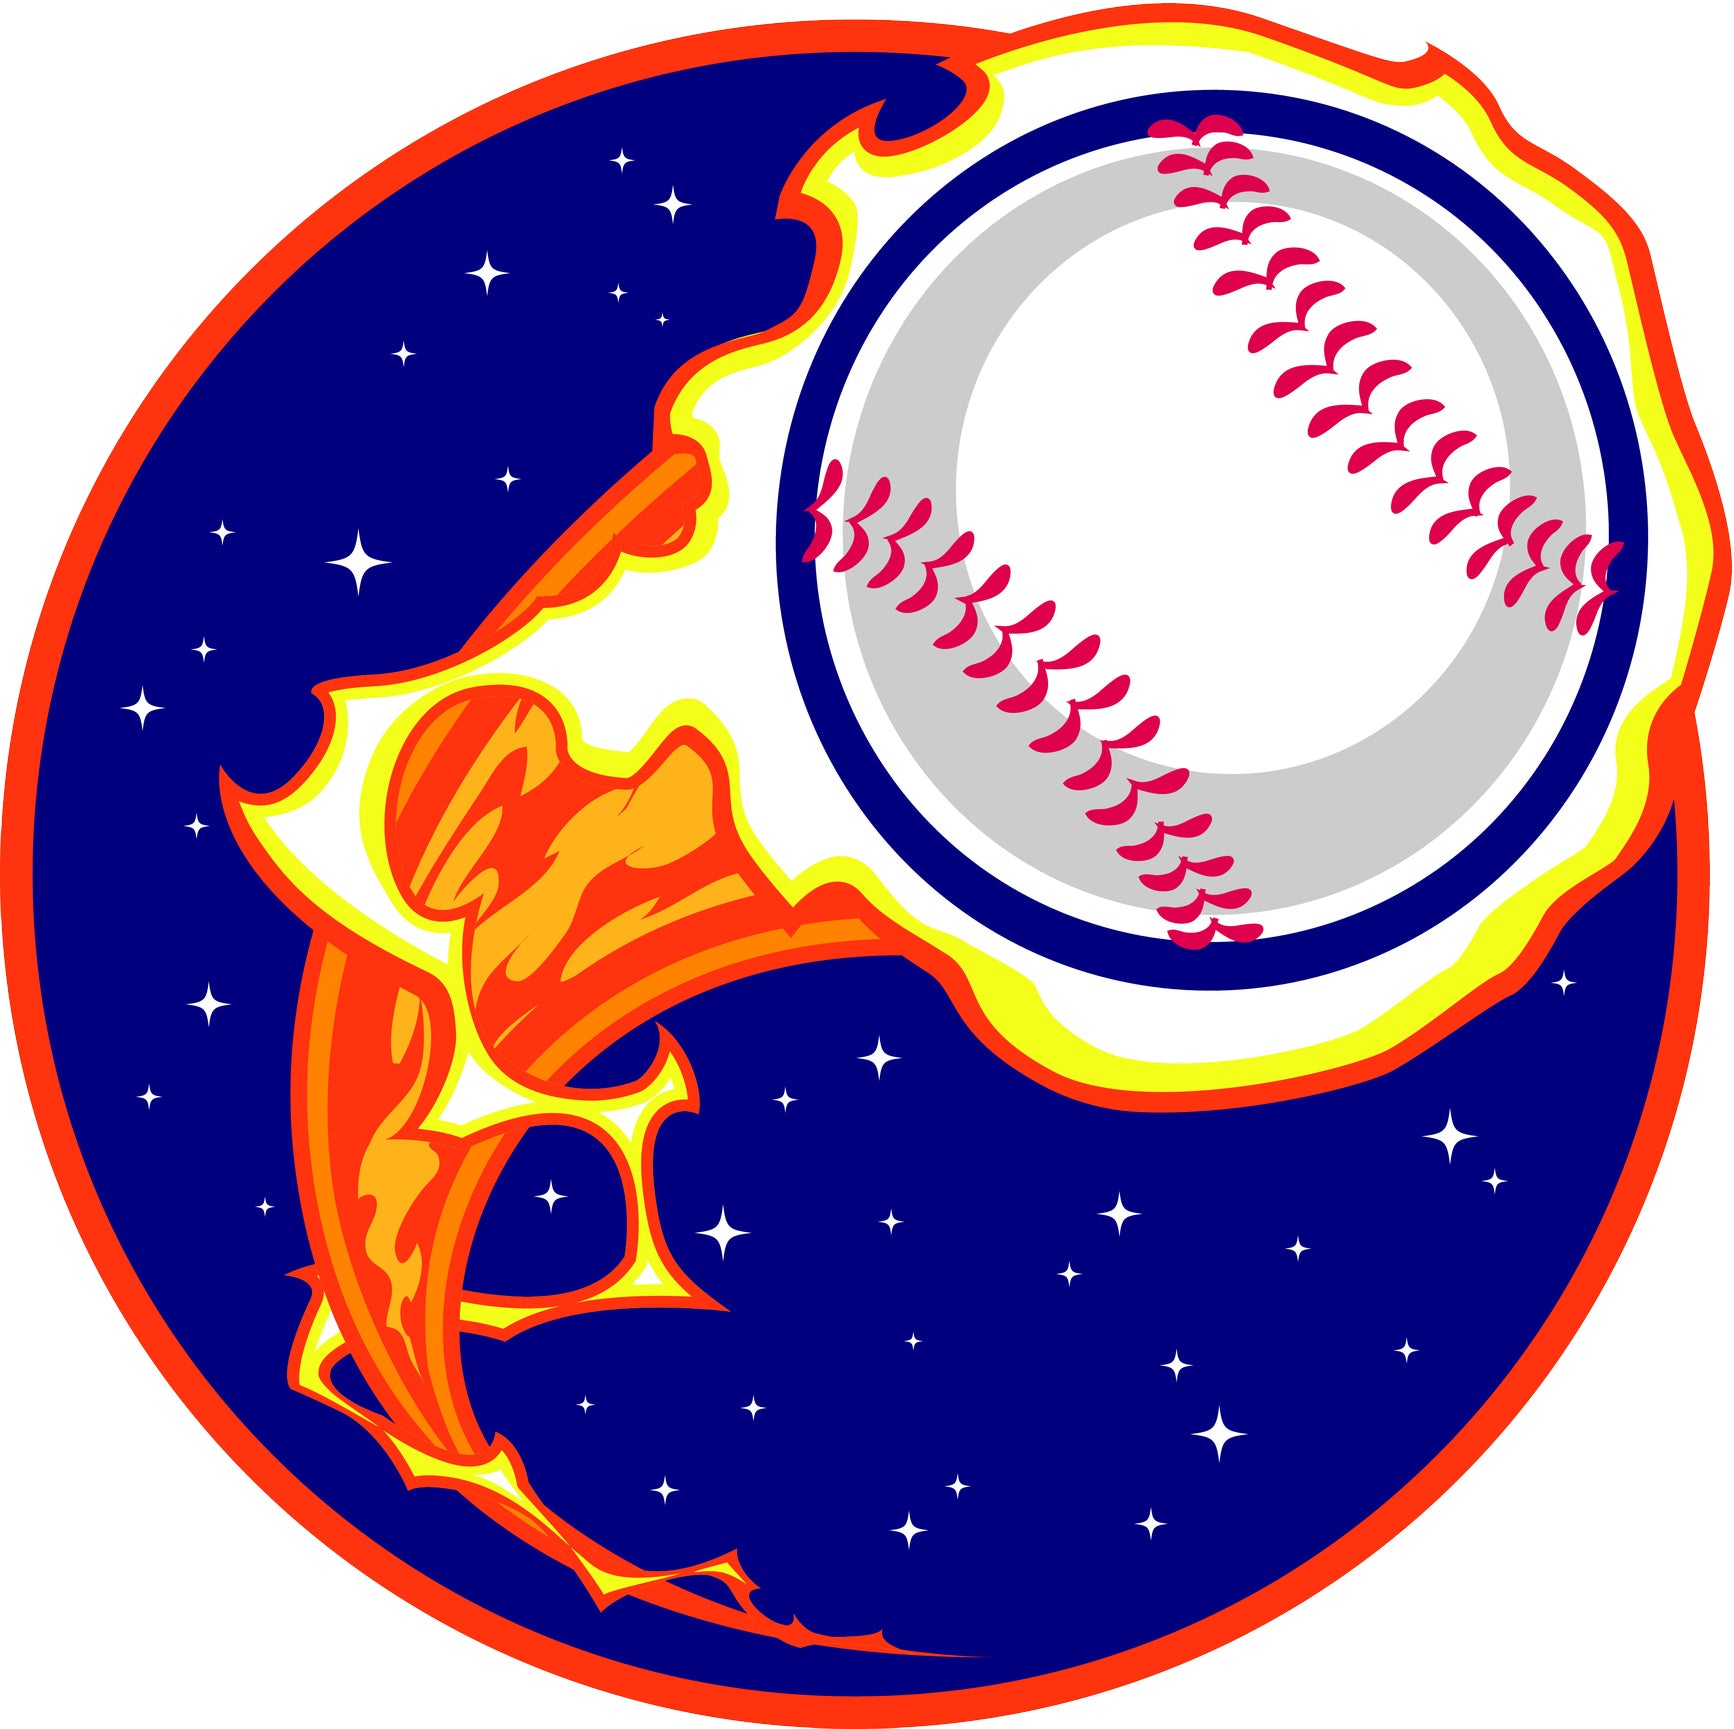 baseball ball animation